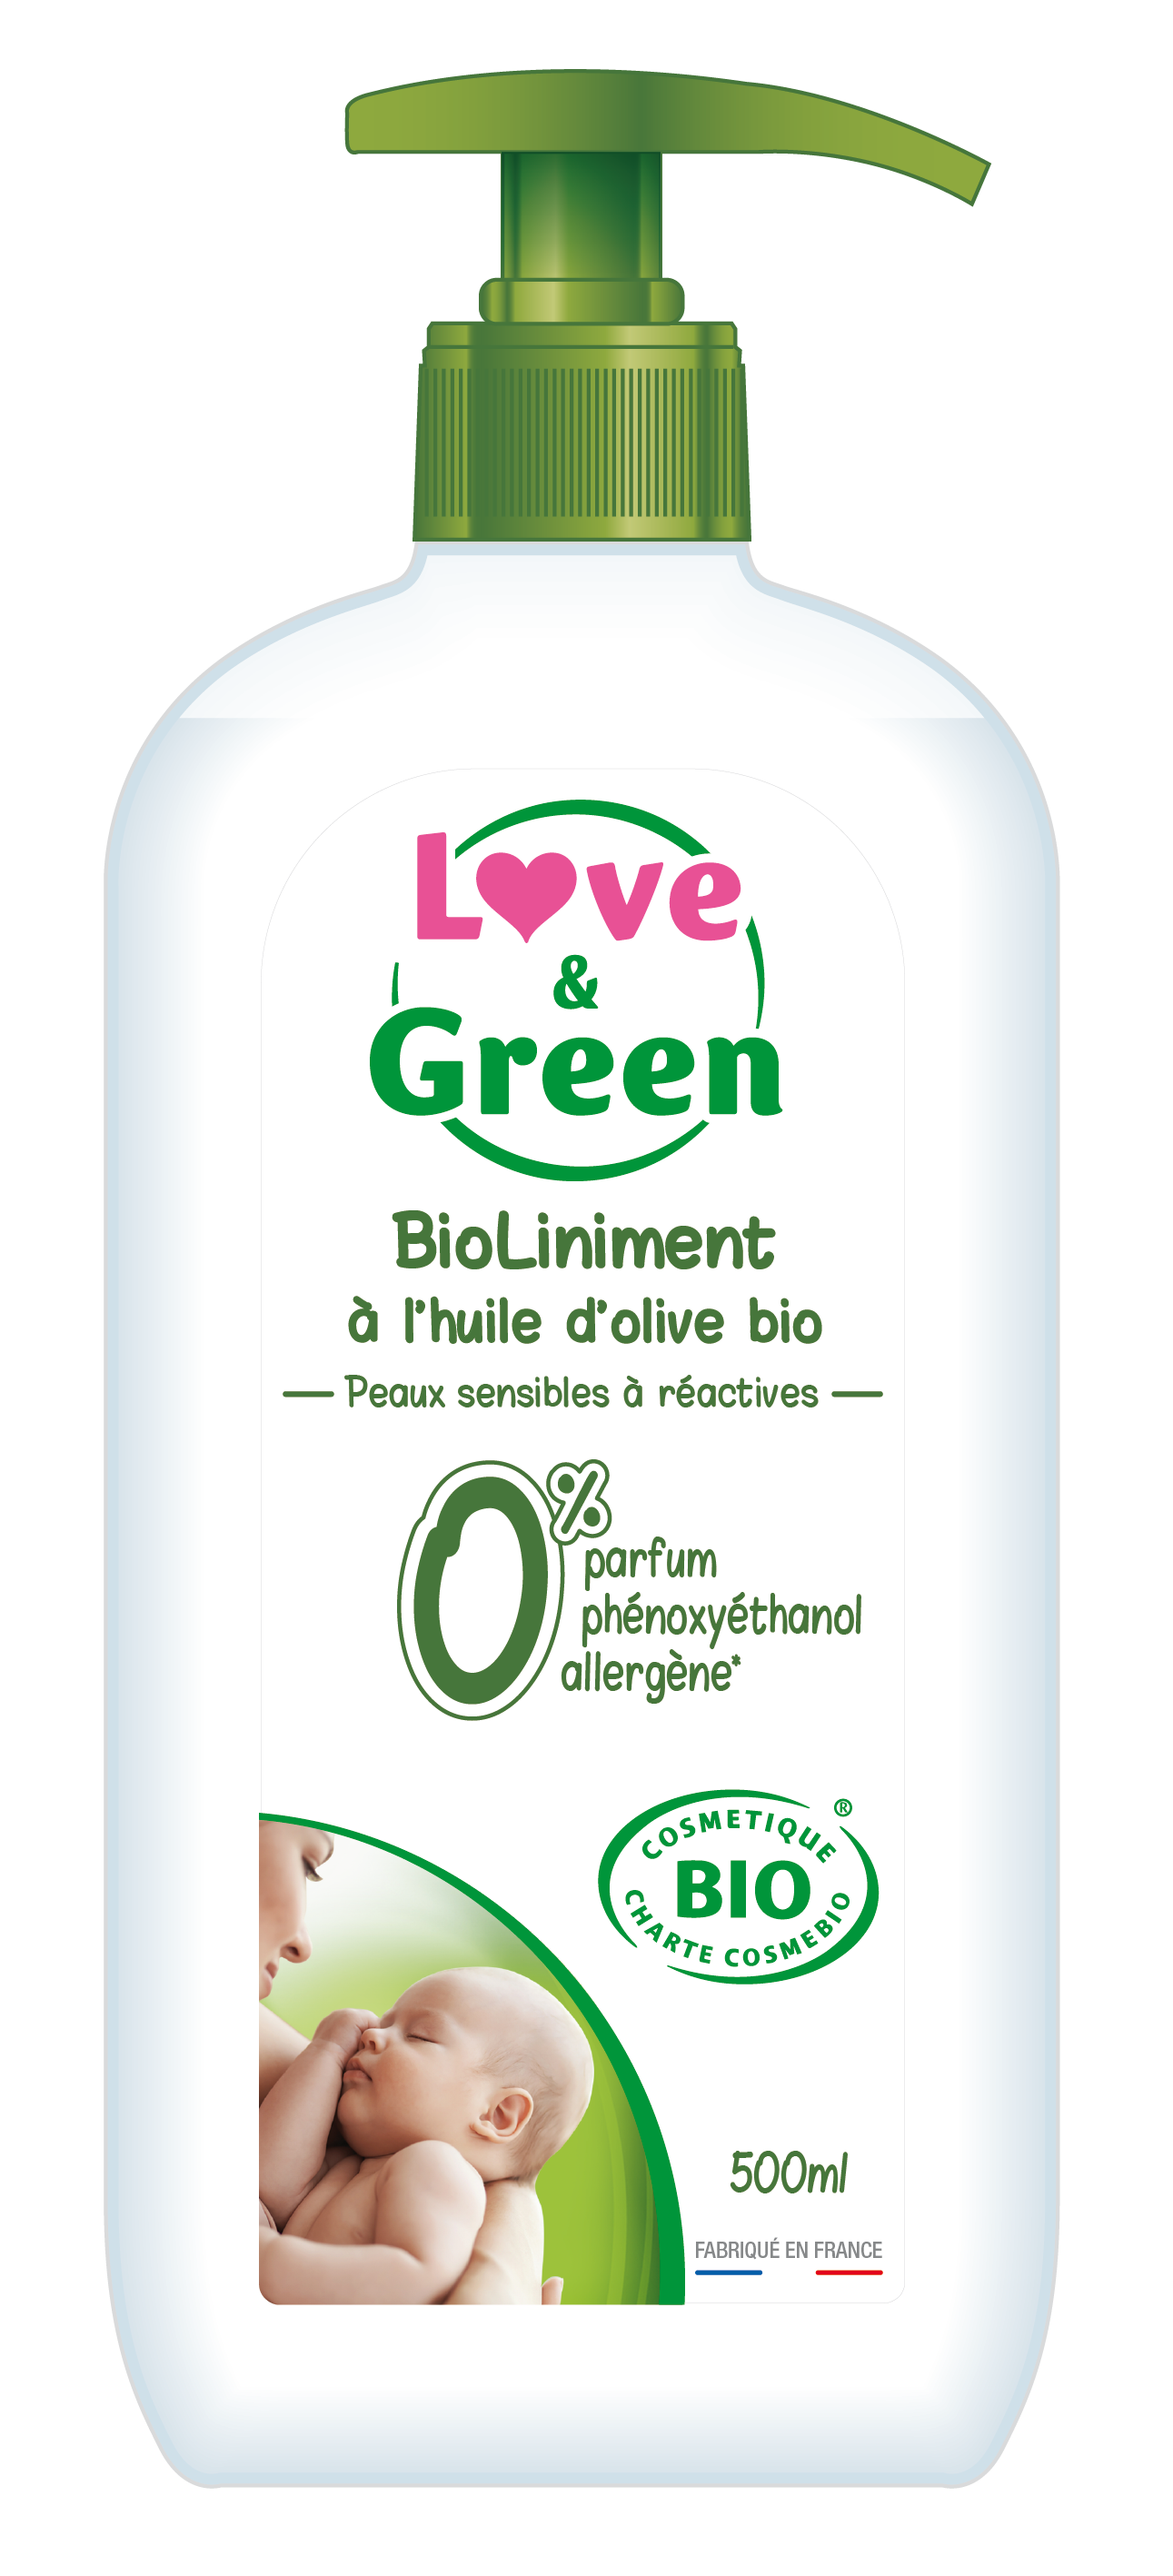 Lingettes écologiques au liniment Love & Green